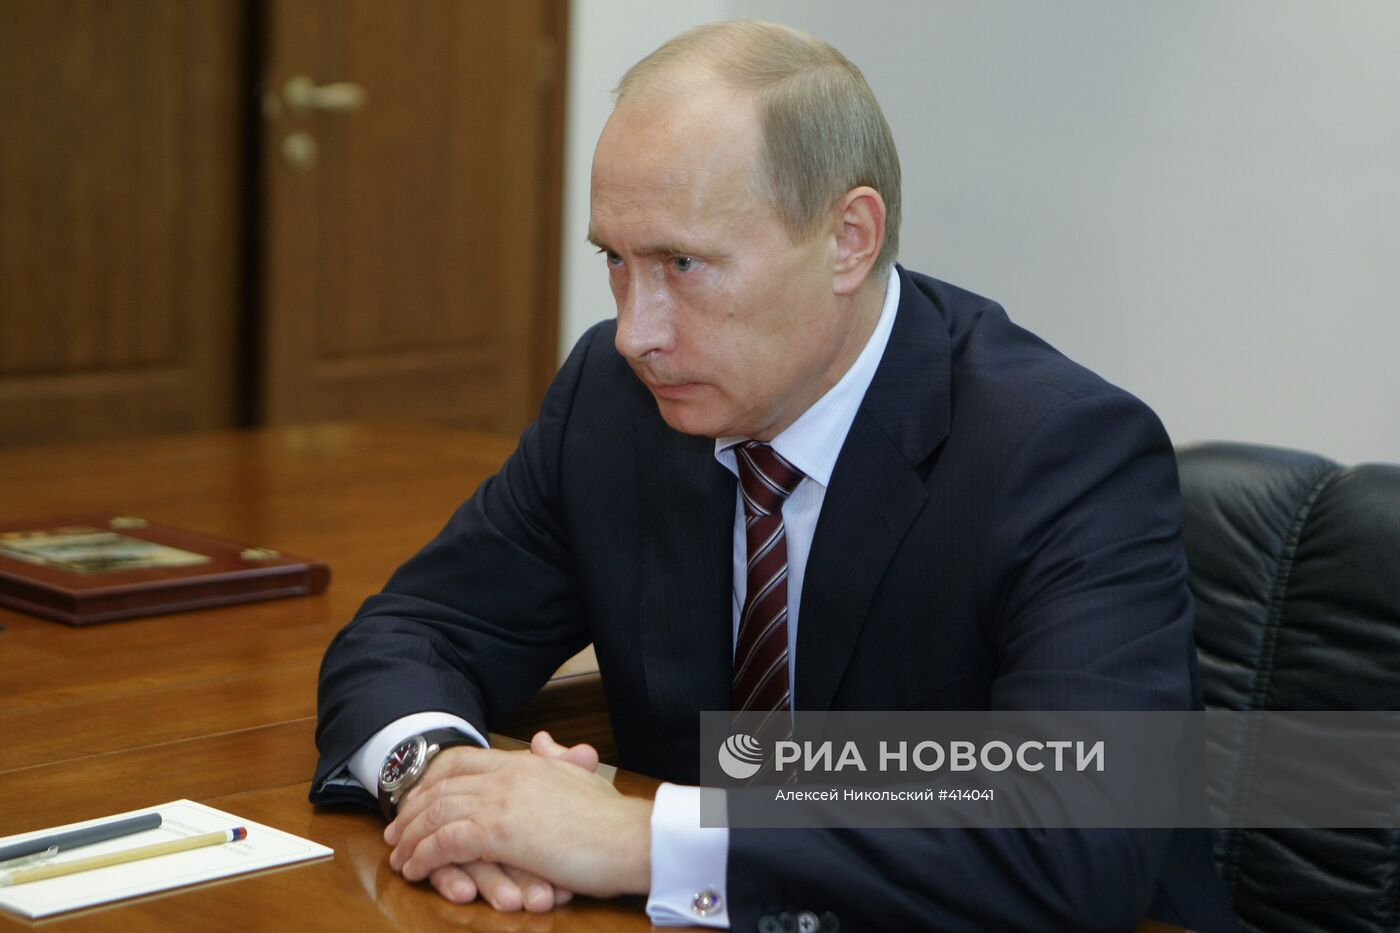 Встреча В. Путина с П. Суминым